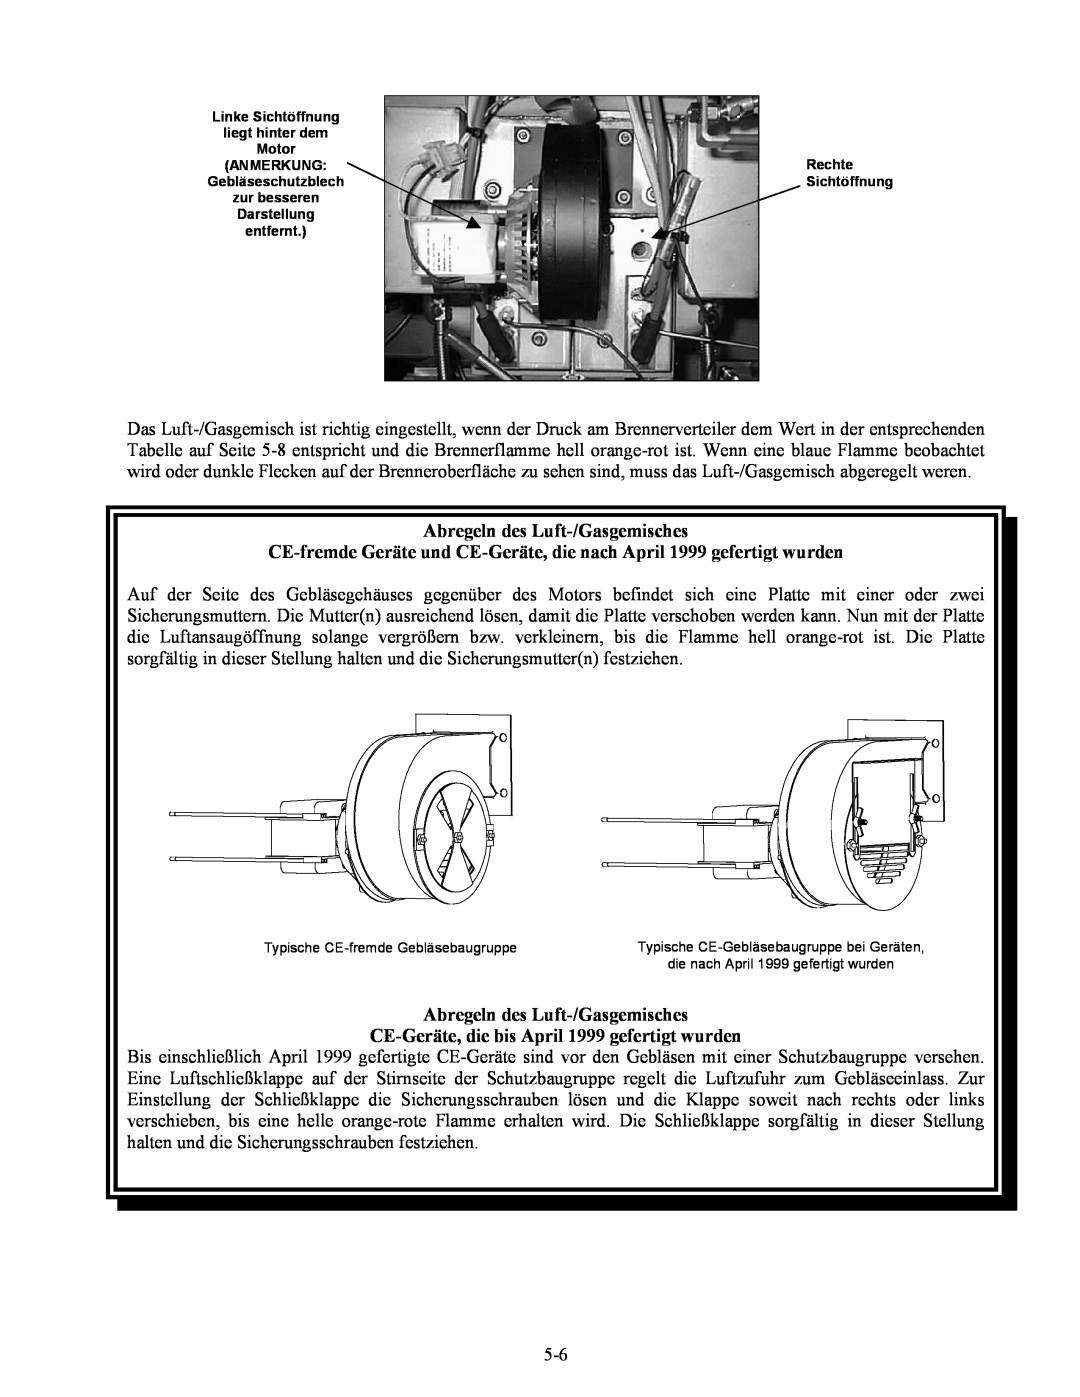 Frymaster Series H50 manual Abregeln des Luft-/Gasgemisches, CE-Geräte,die bis April 1999 gefertigt wurden 